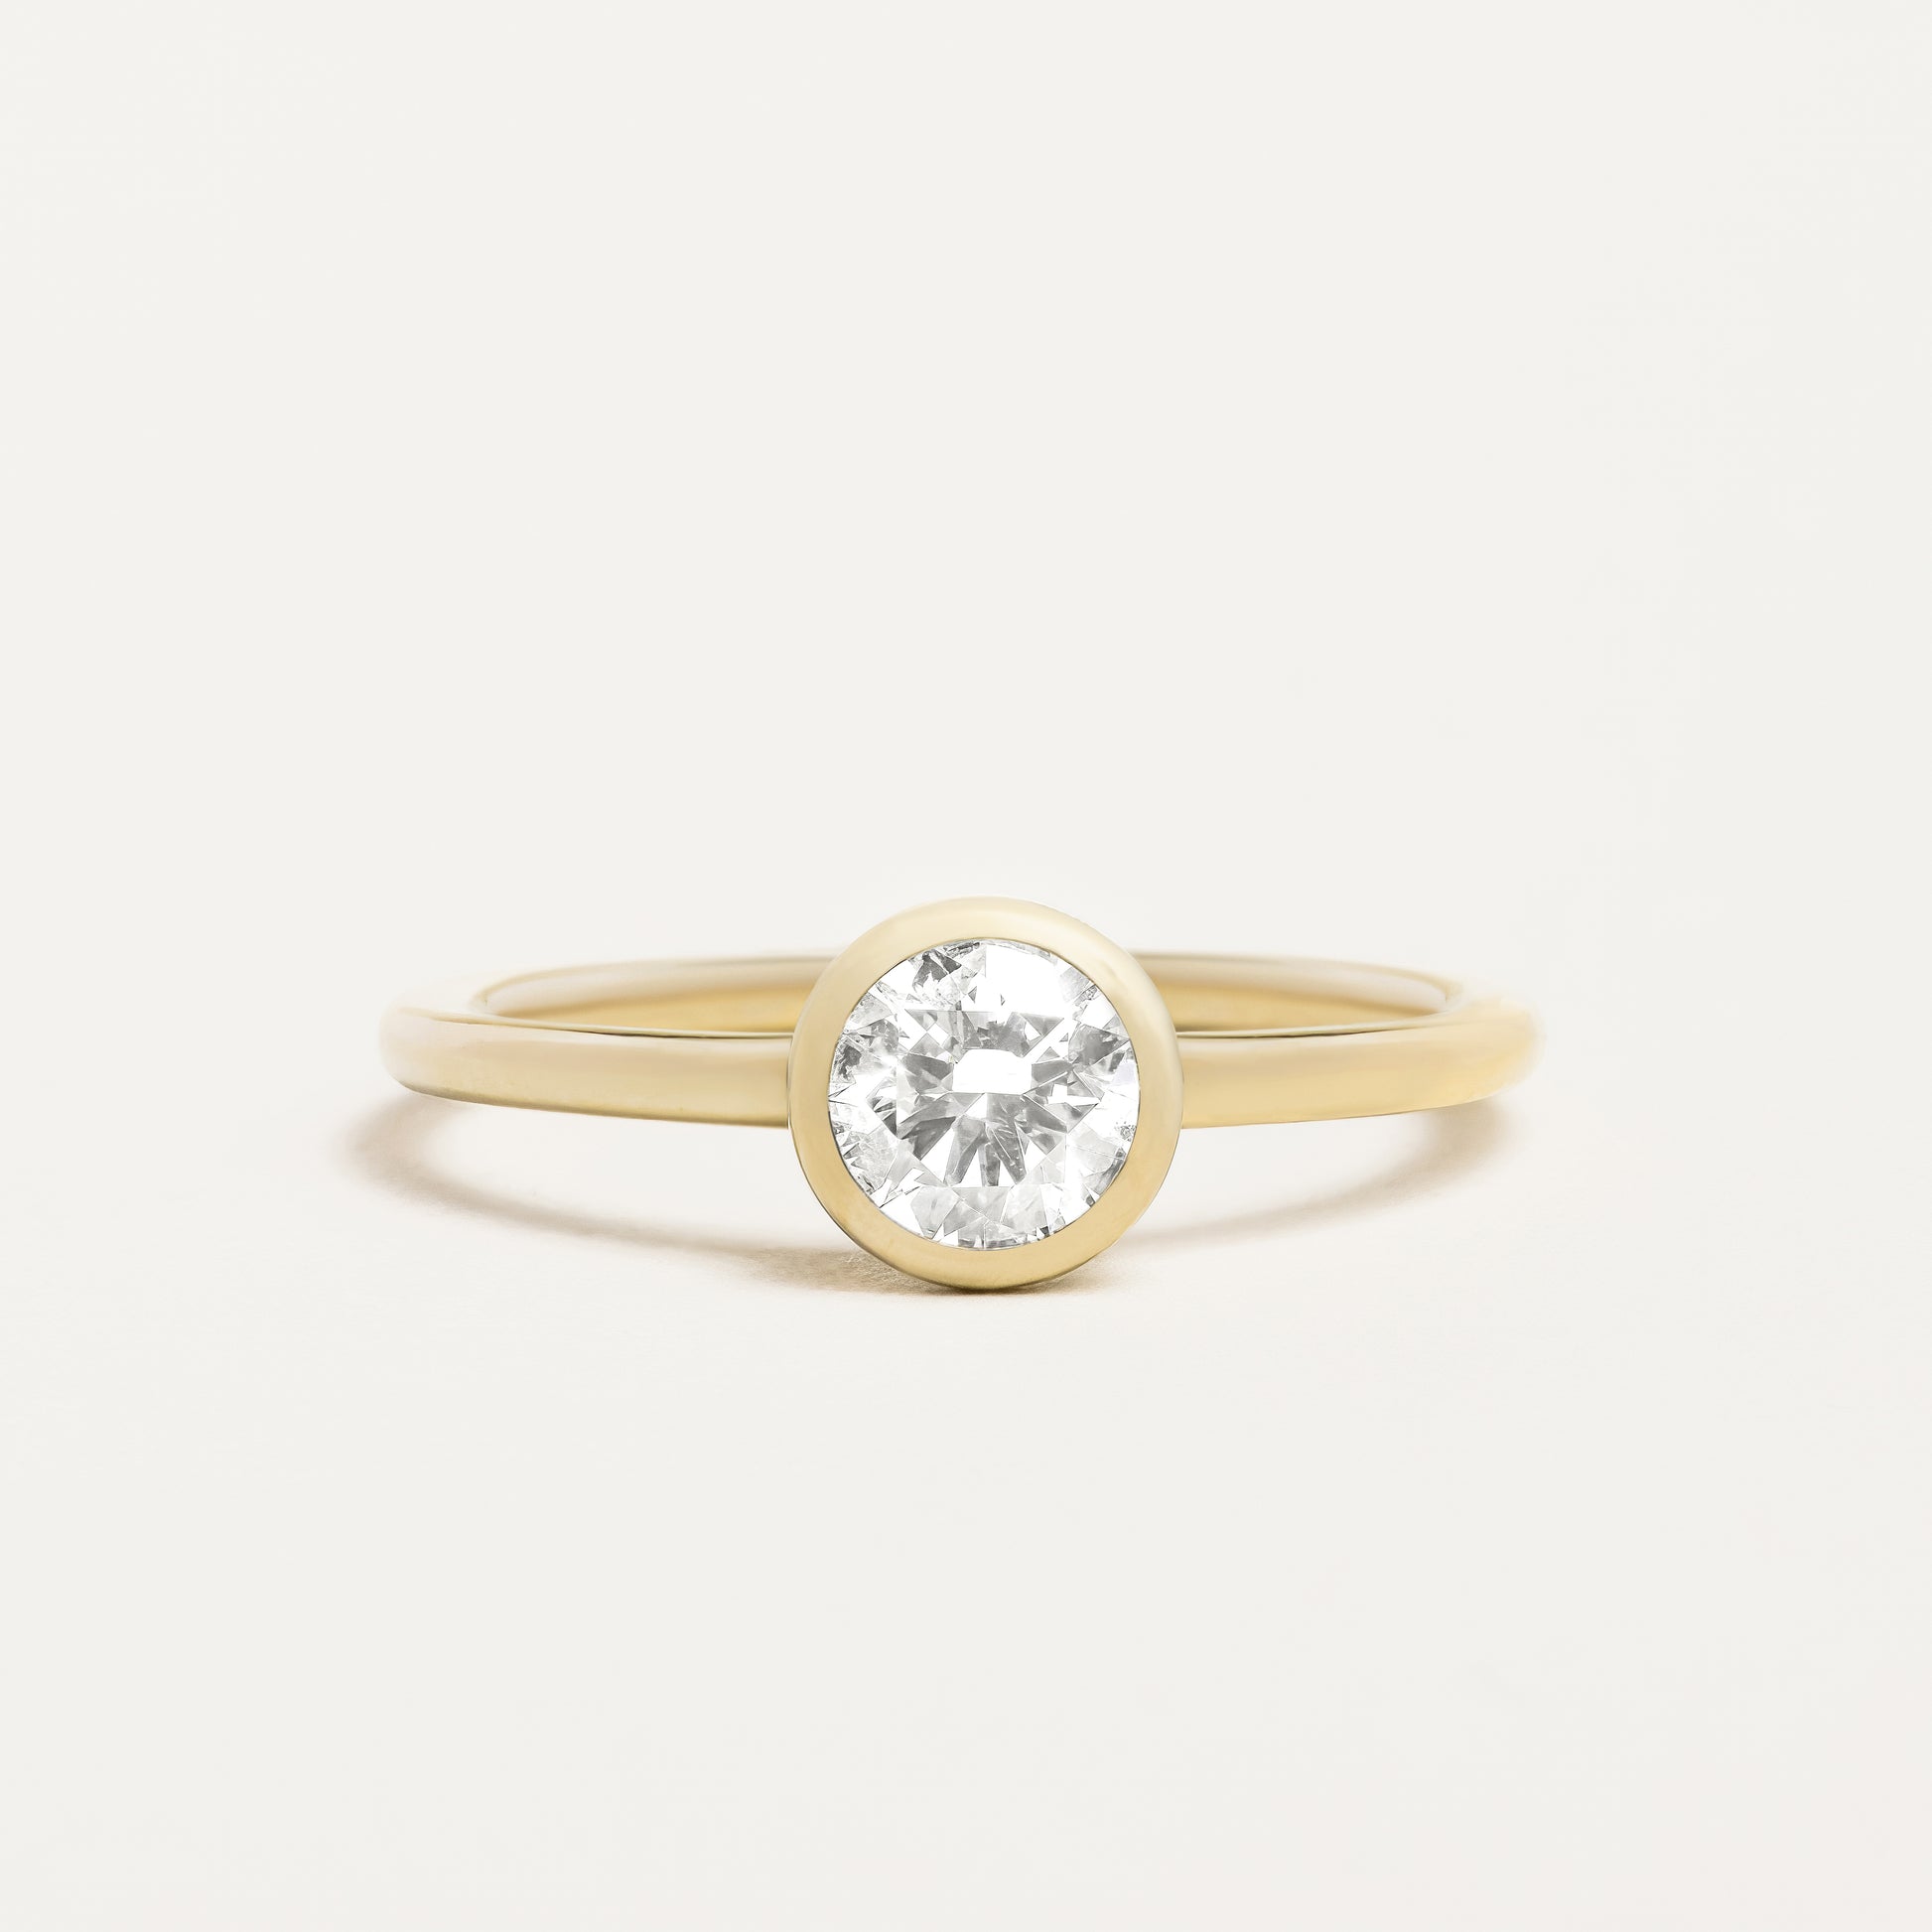 Large Round Bezel Engagement Ring